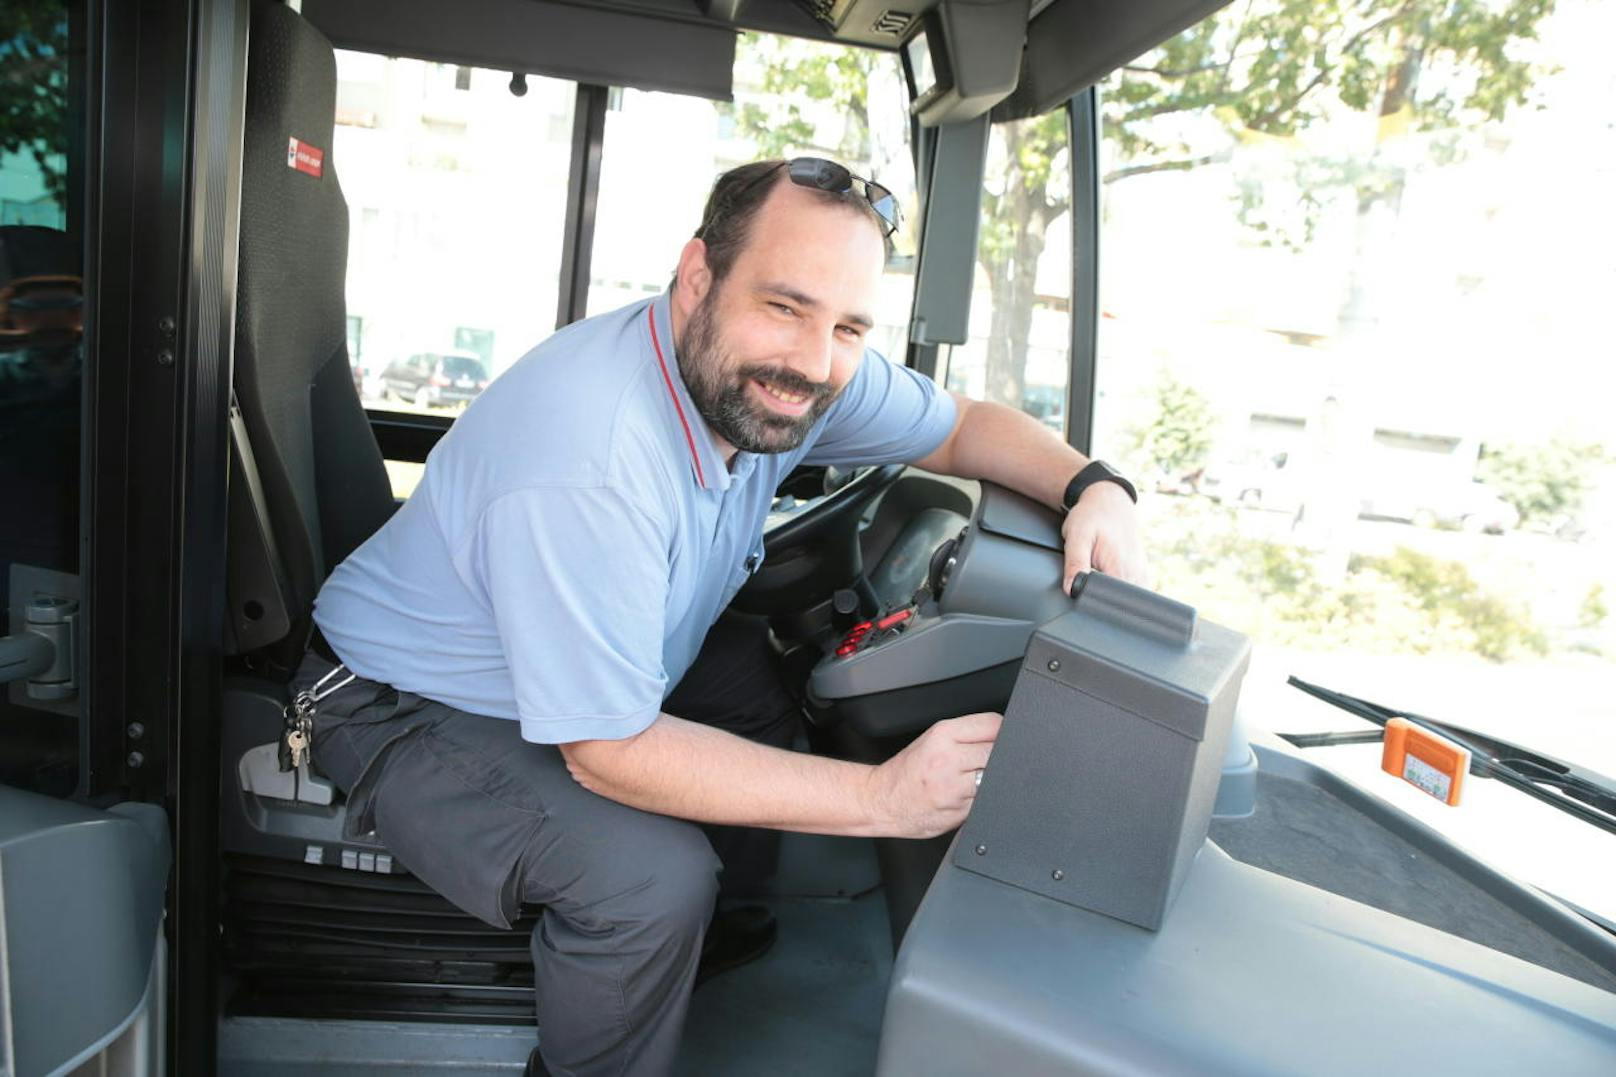 Busfahrer Olivier zaubert seinen Fahrgästen jeden Tag ein Lächeln ins Gesicht. Eine Leserin bedankt sich nun mit einem offenen Brief bei ihm. "Heute" hat ihn getroffen.